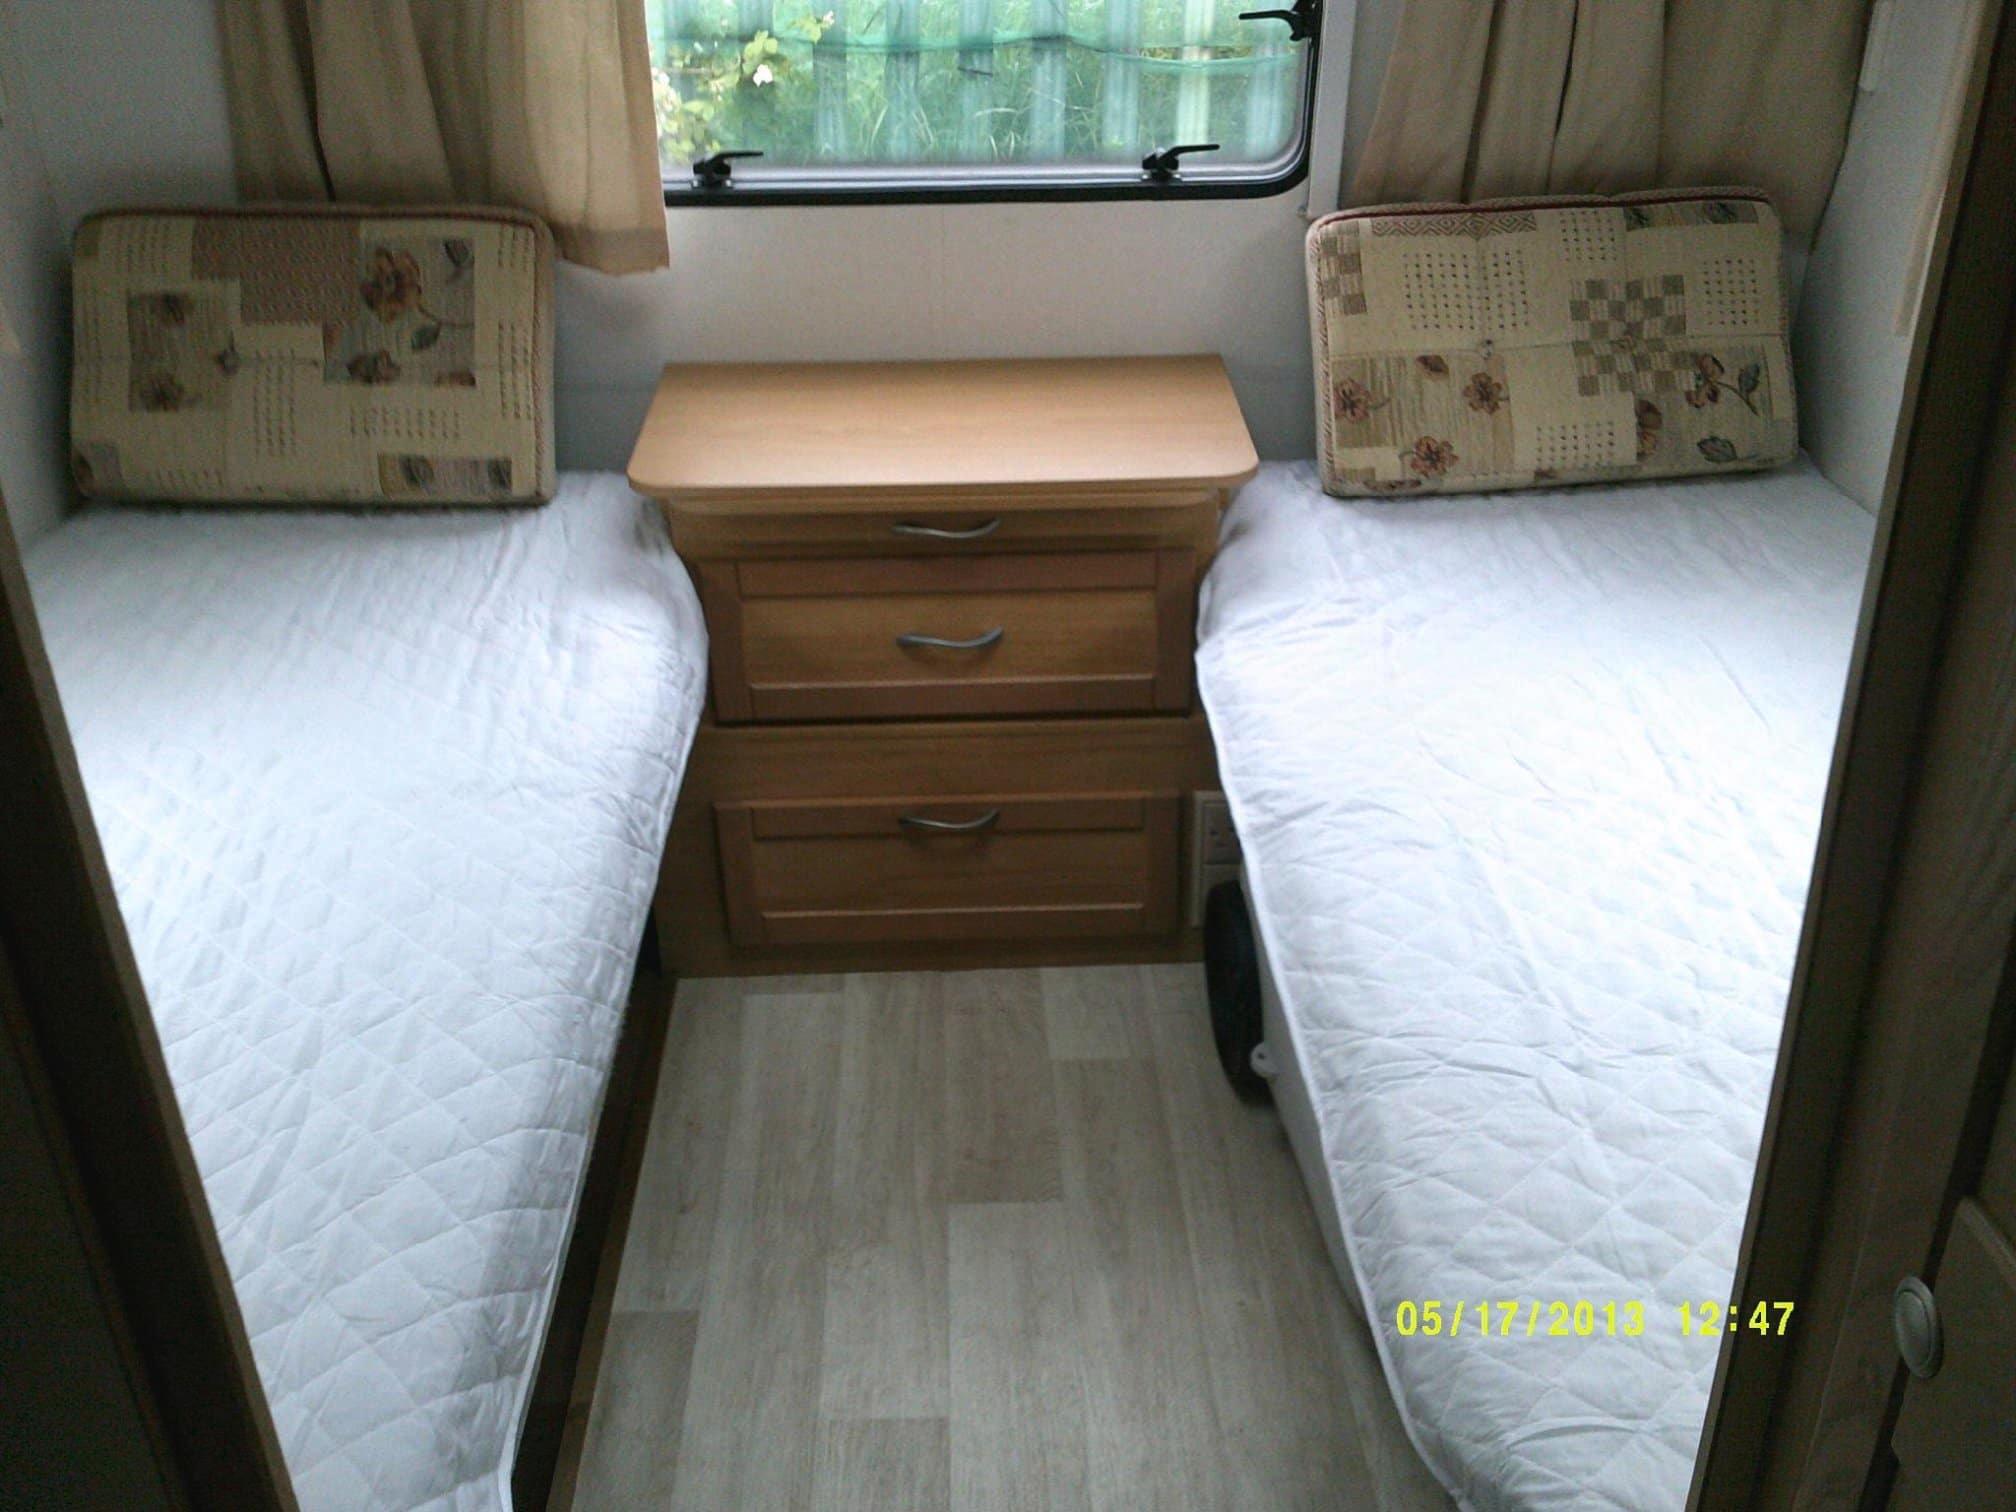 M & L Caravan Hire Ltd Grimsby 07802 441094